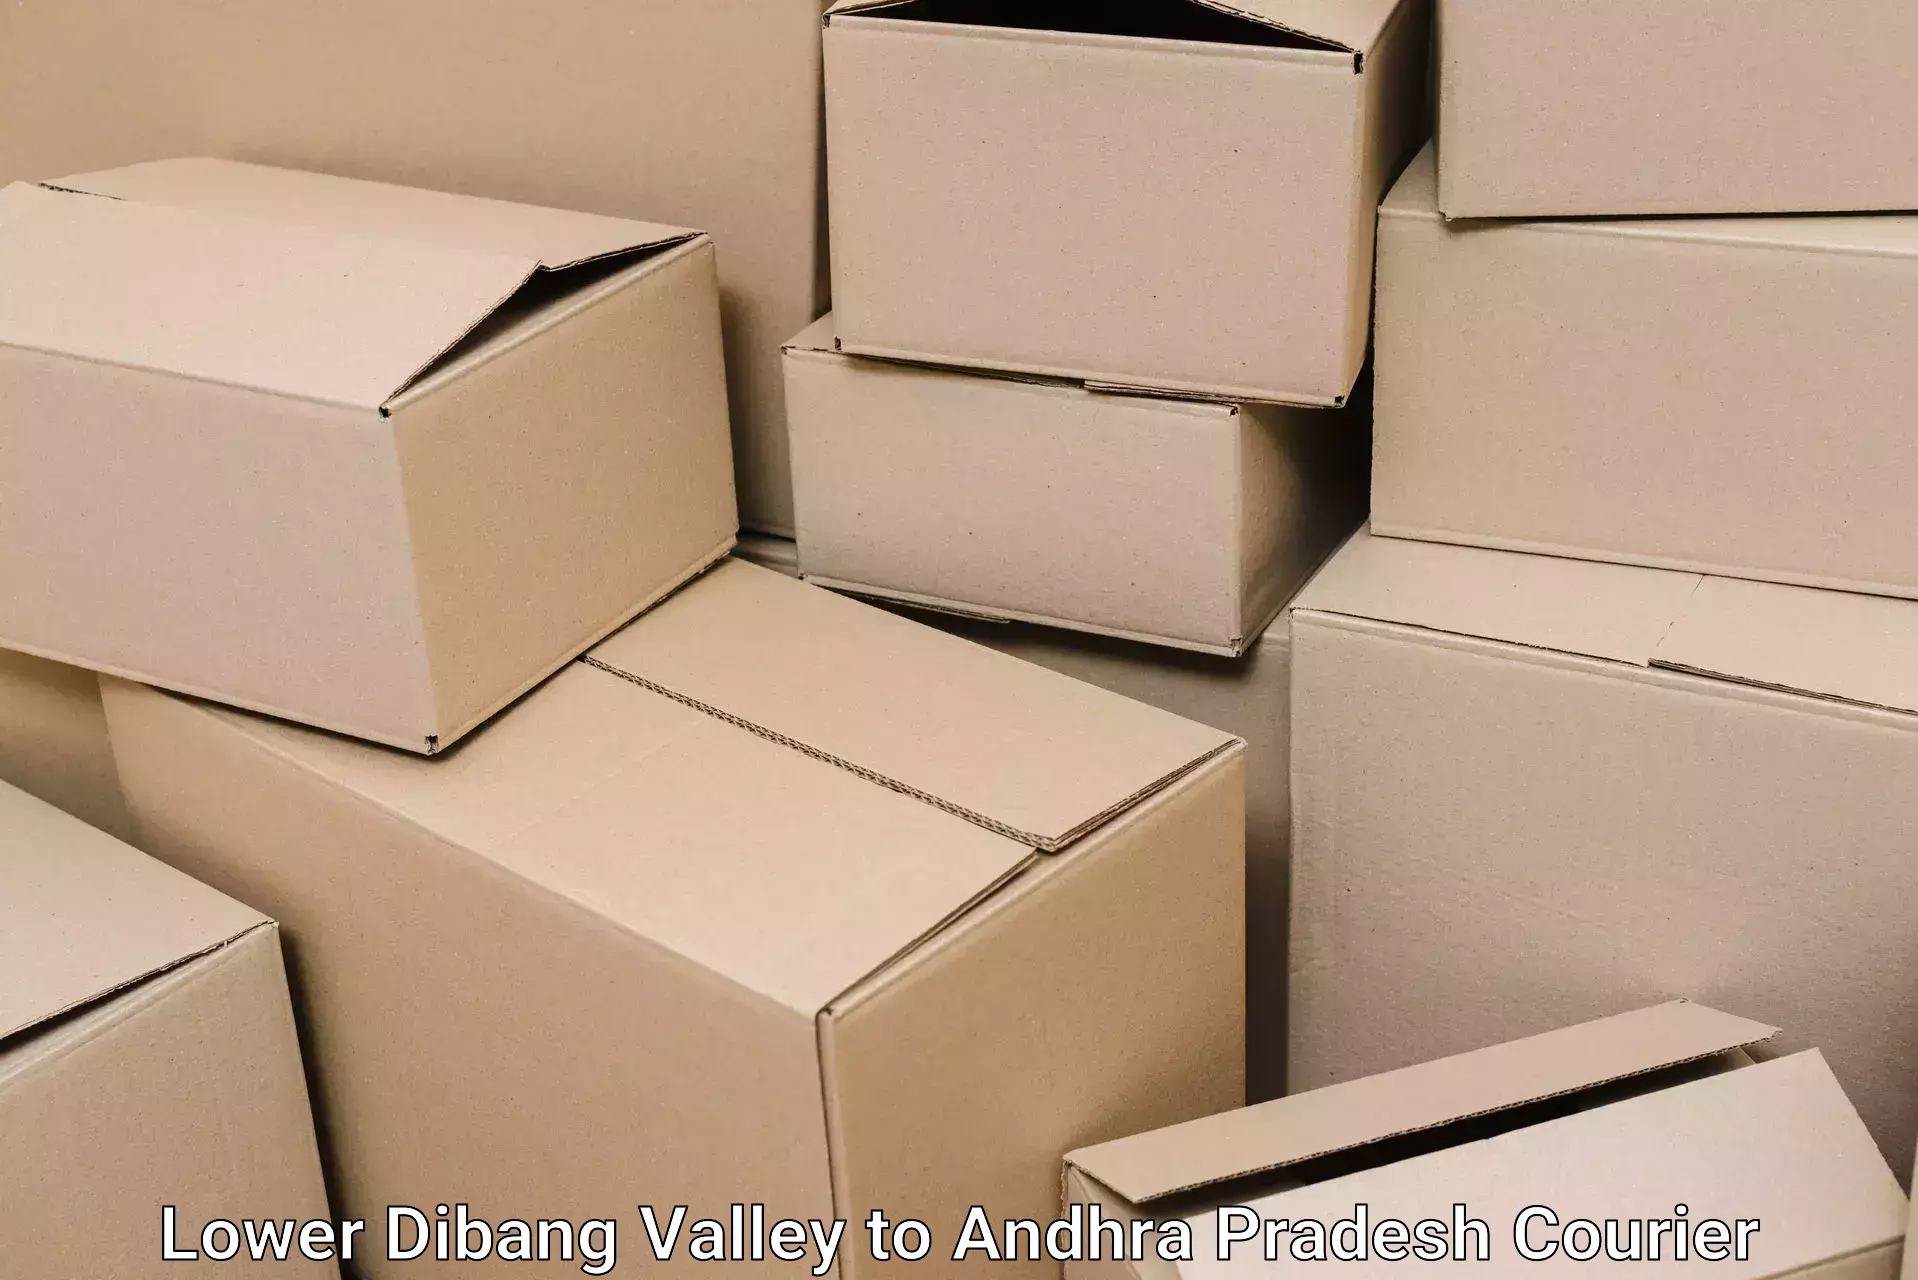 Furniture shipping services Lower Dibang Valley to Venkatagirikota